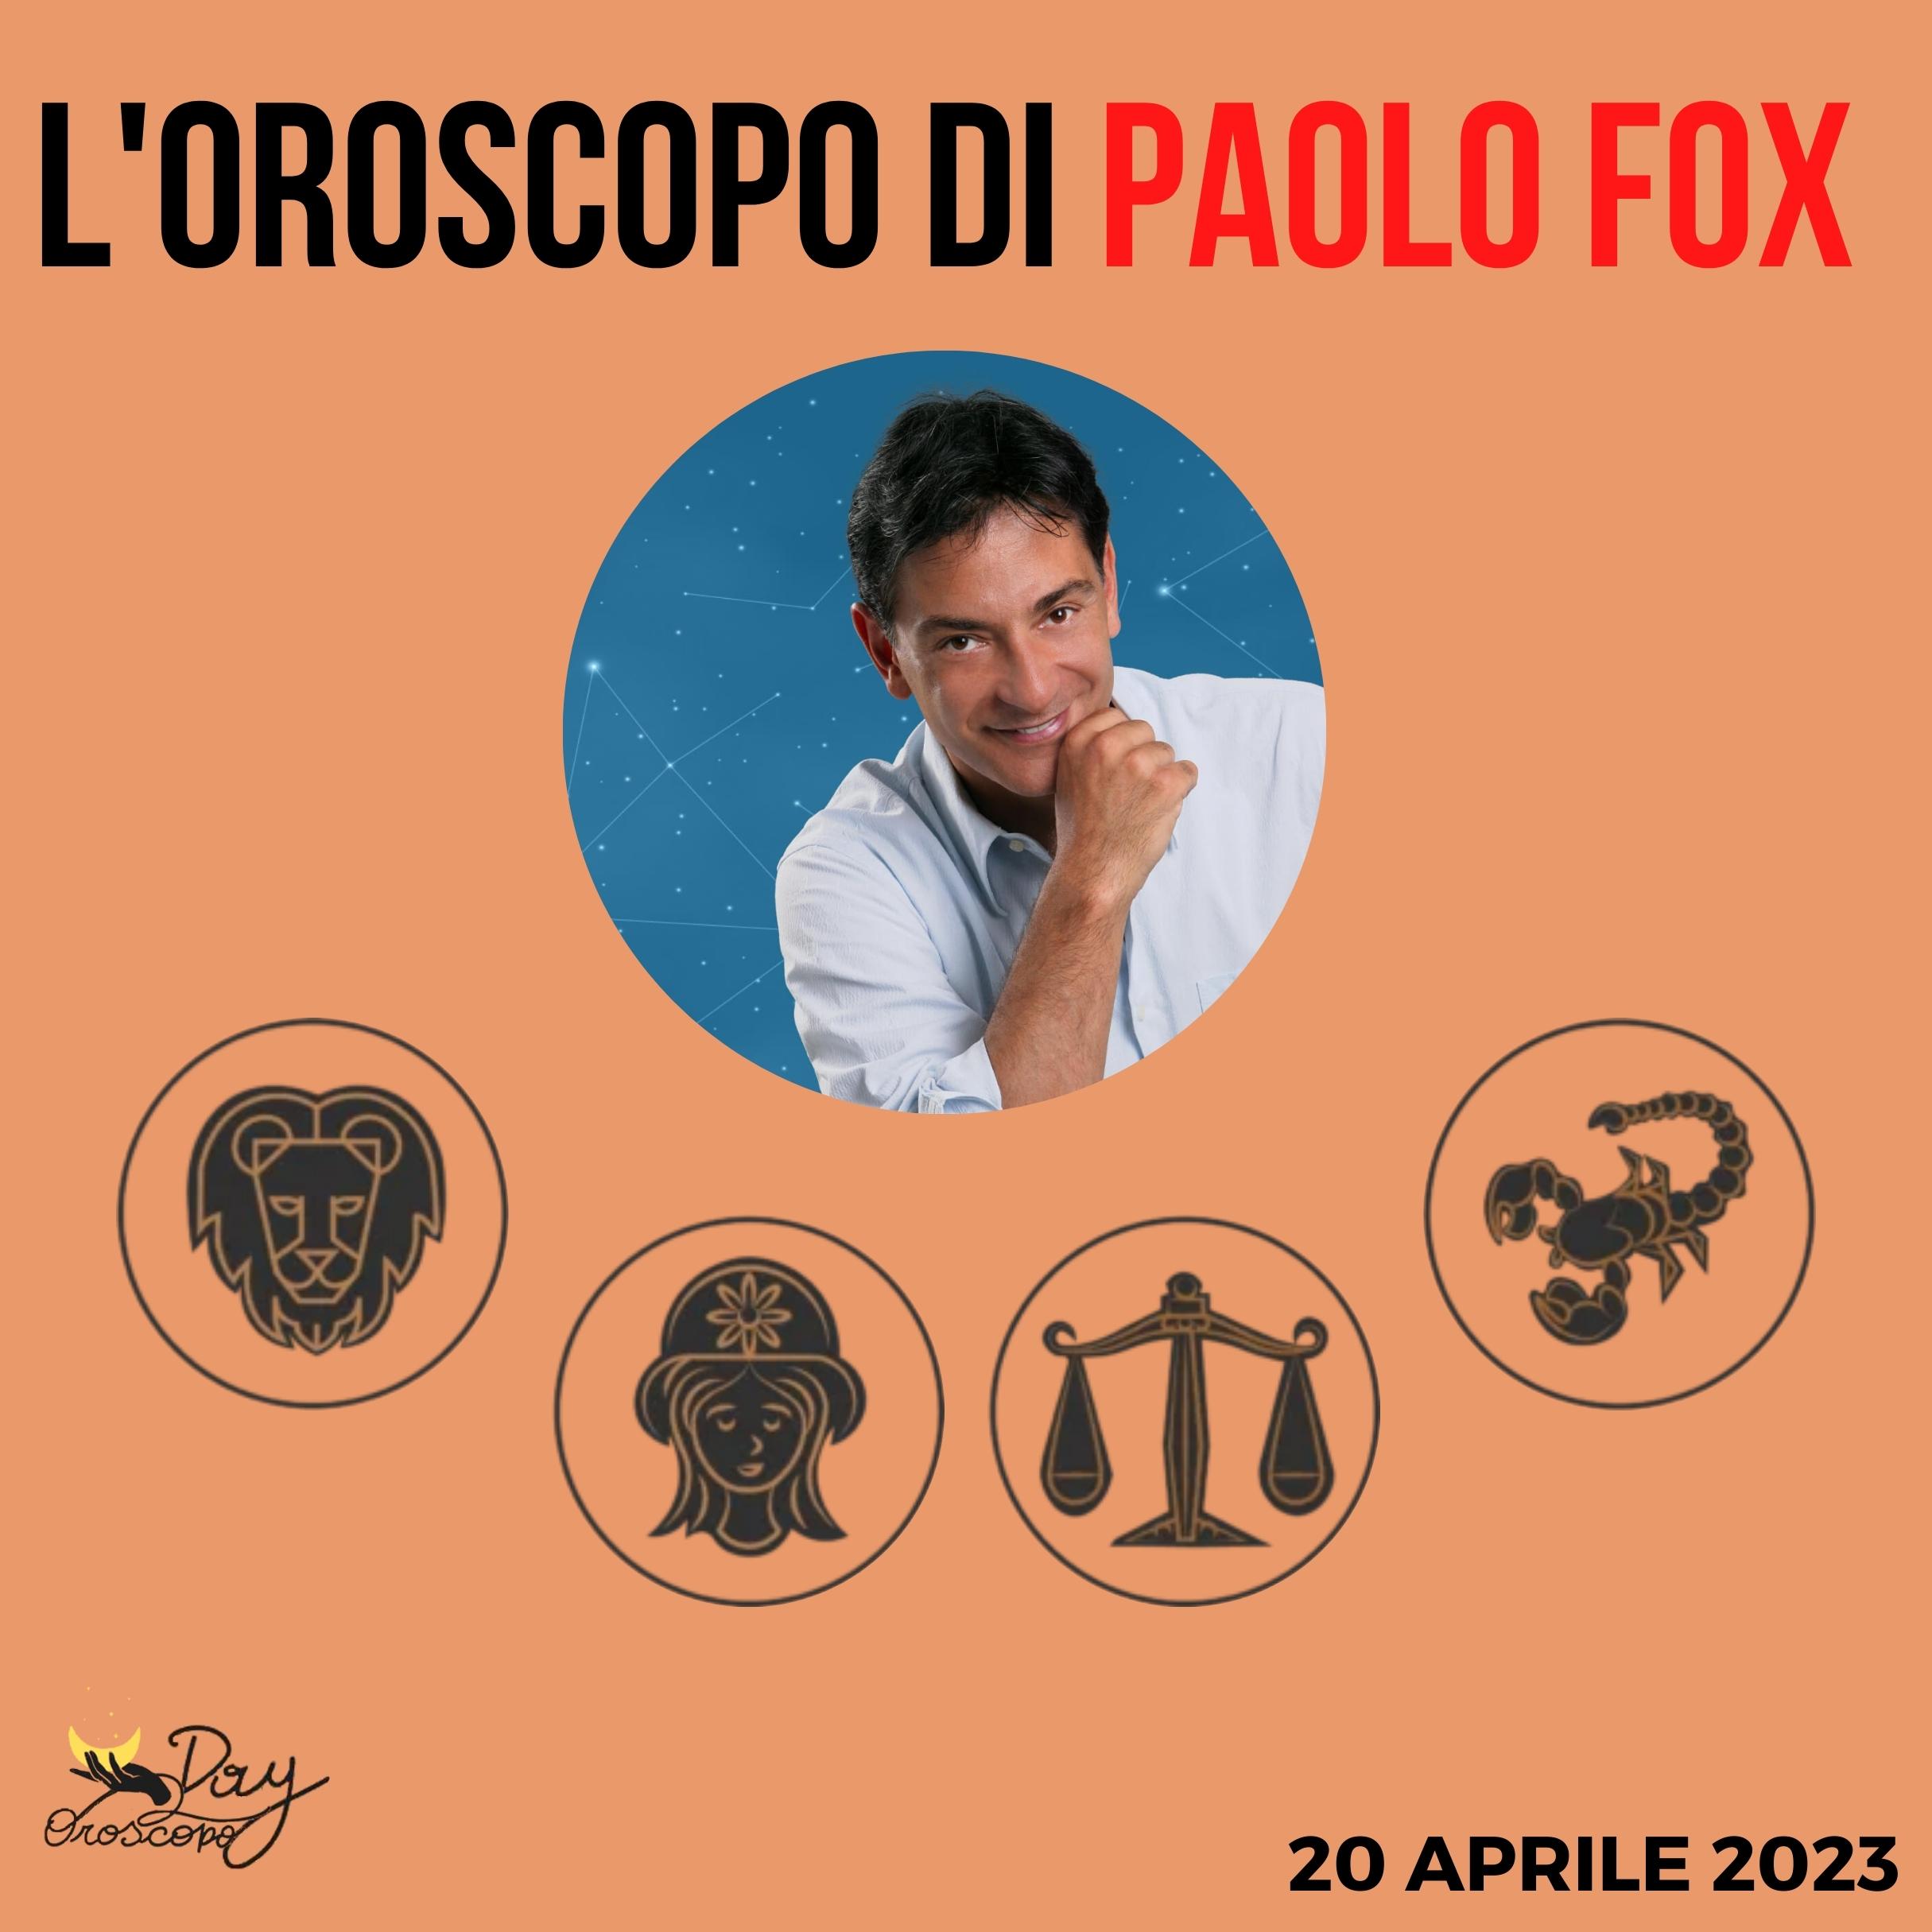 Oroscopo oggi domani Paolo Fox 20 aprile Leone Vergine Bilancia Scorpione